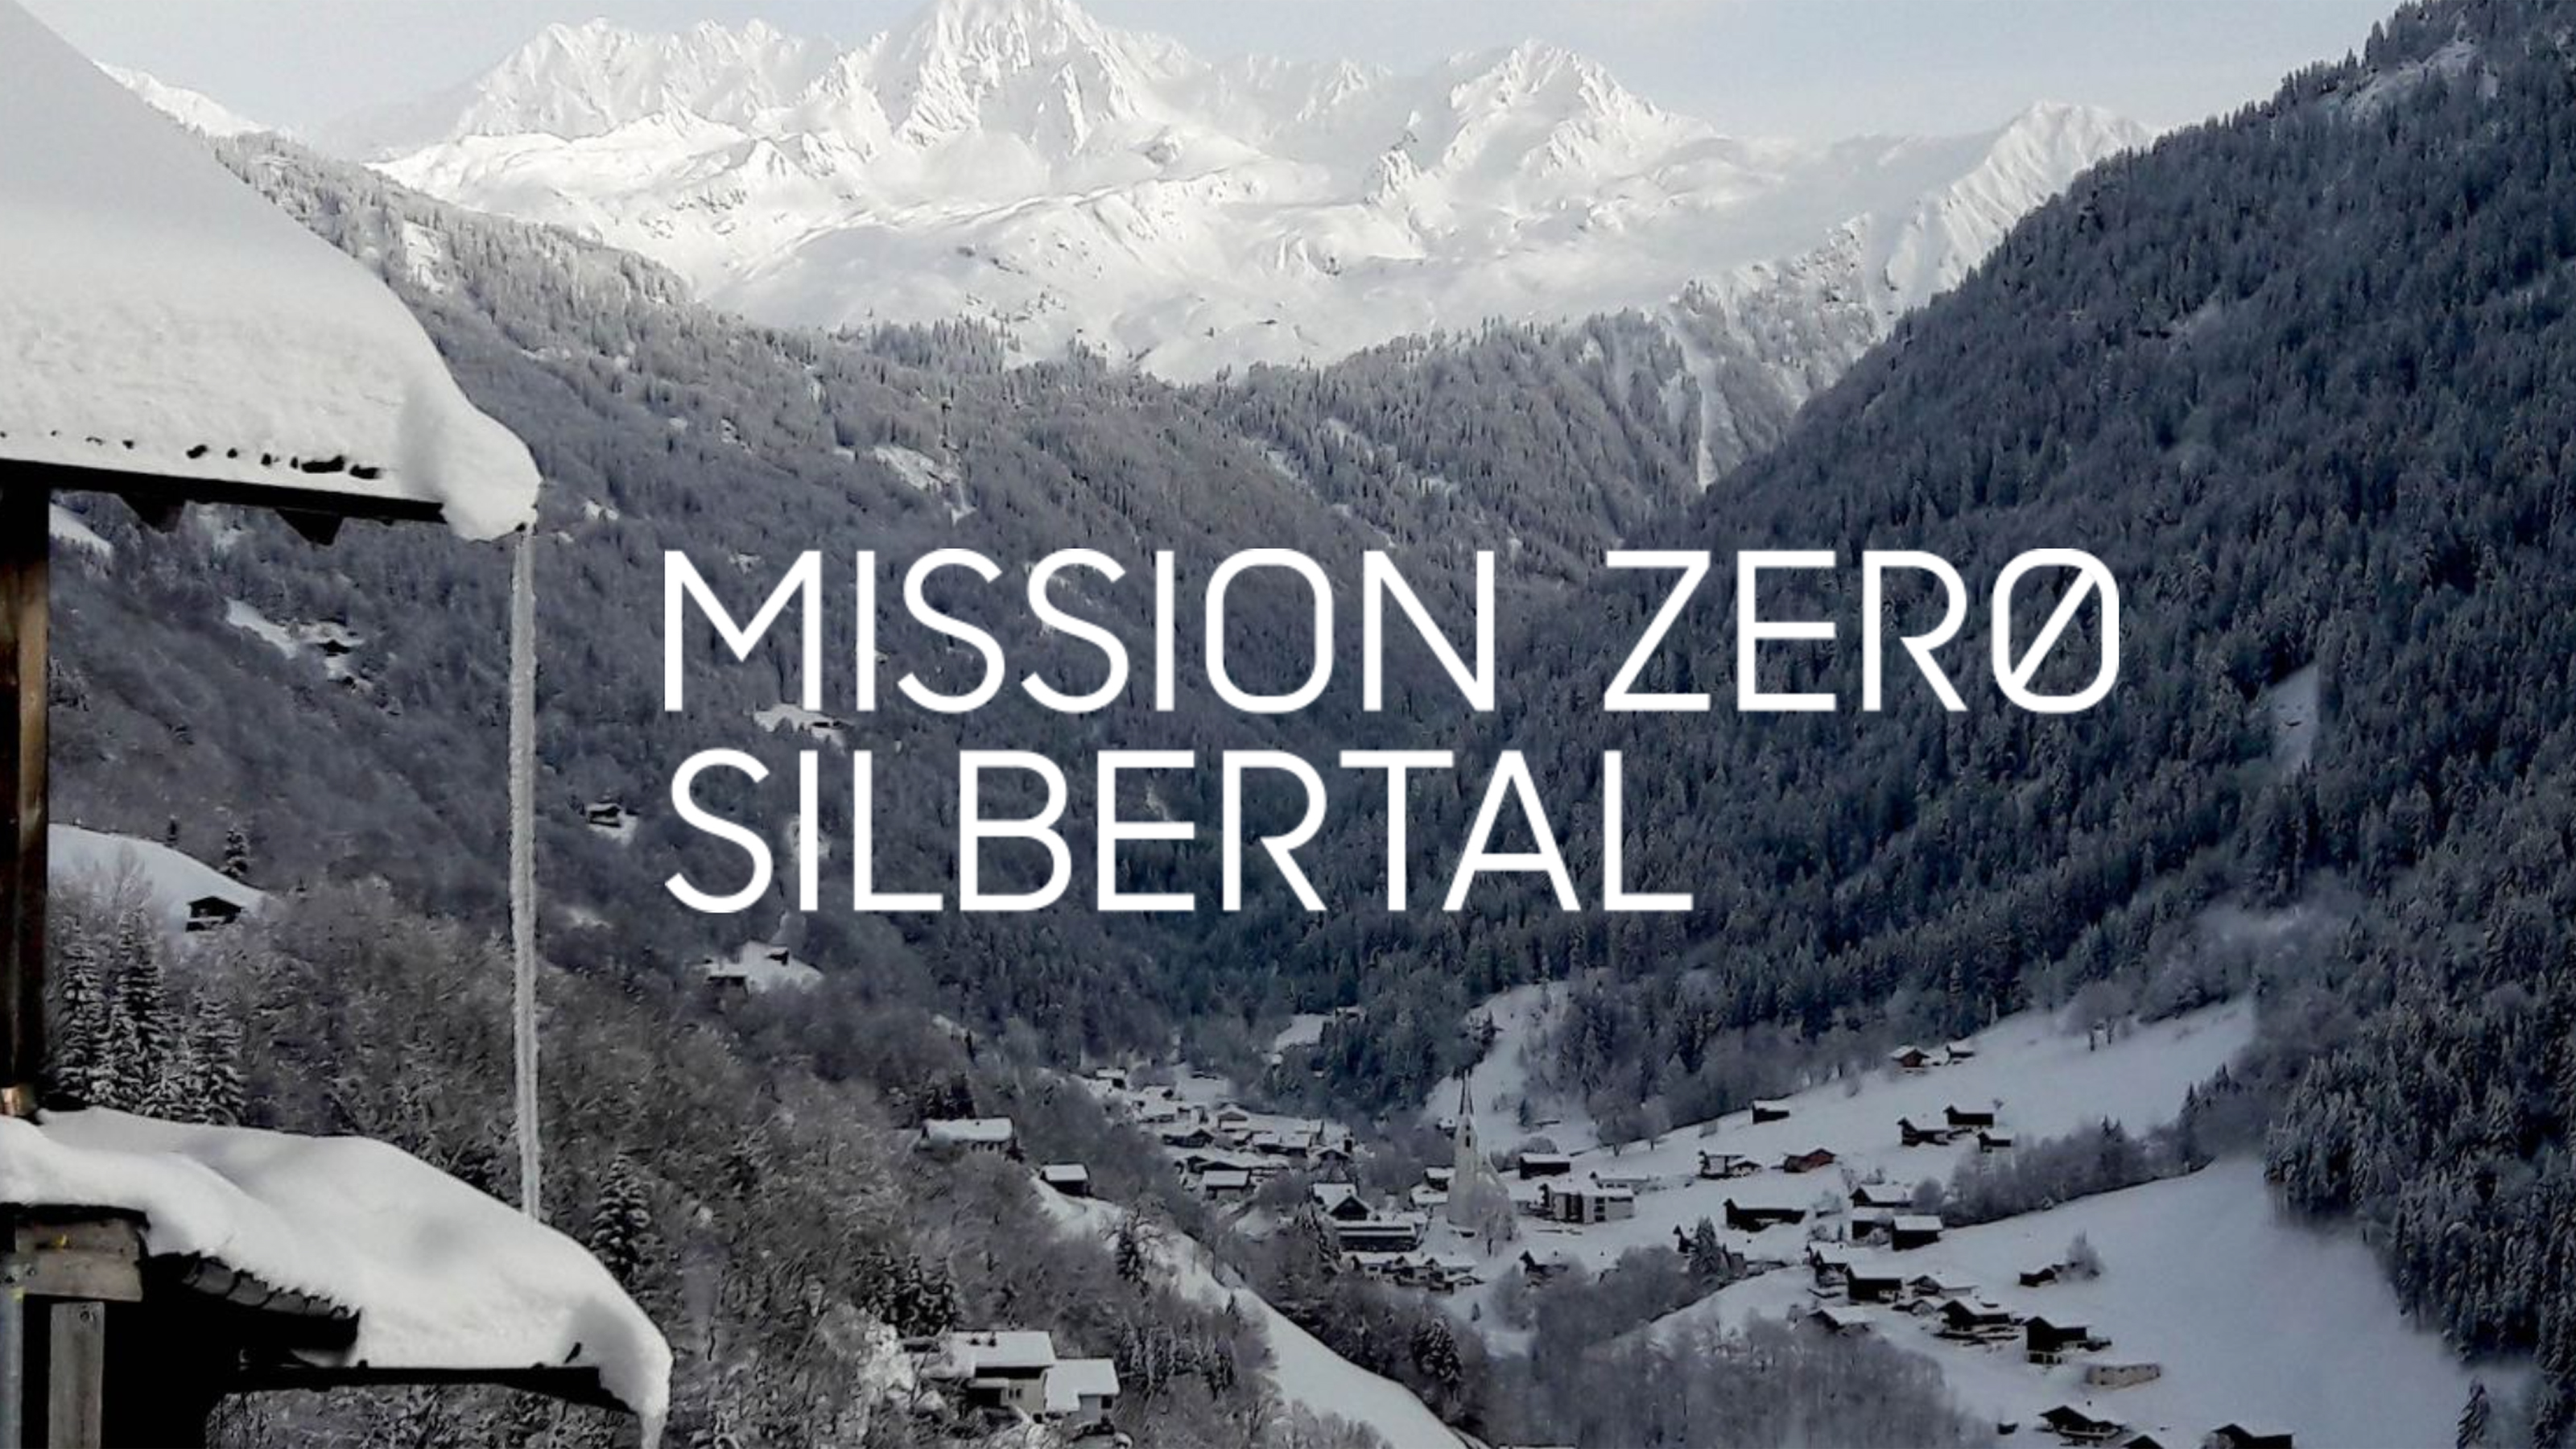 Beschneite Berge - im Vordergrund der Schriftzug "Mission Zero Silbertal"